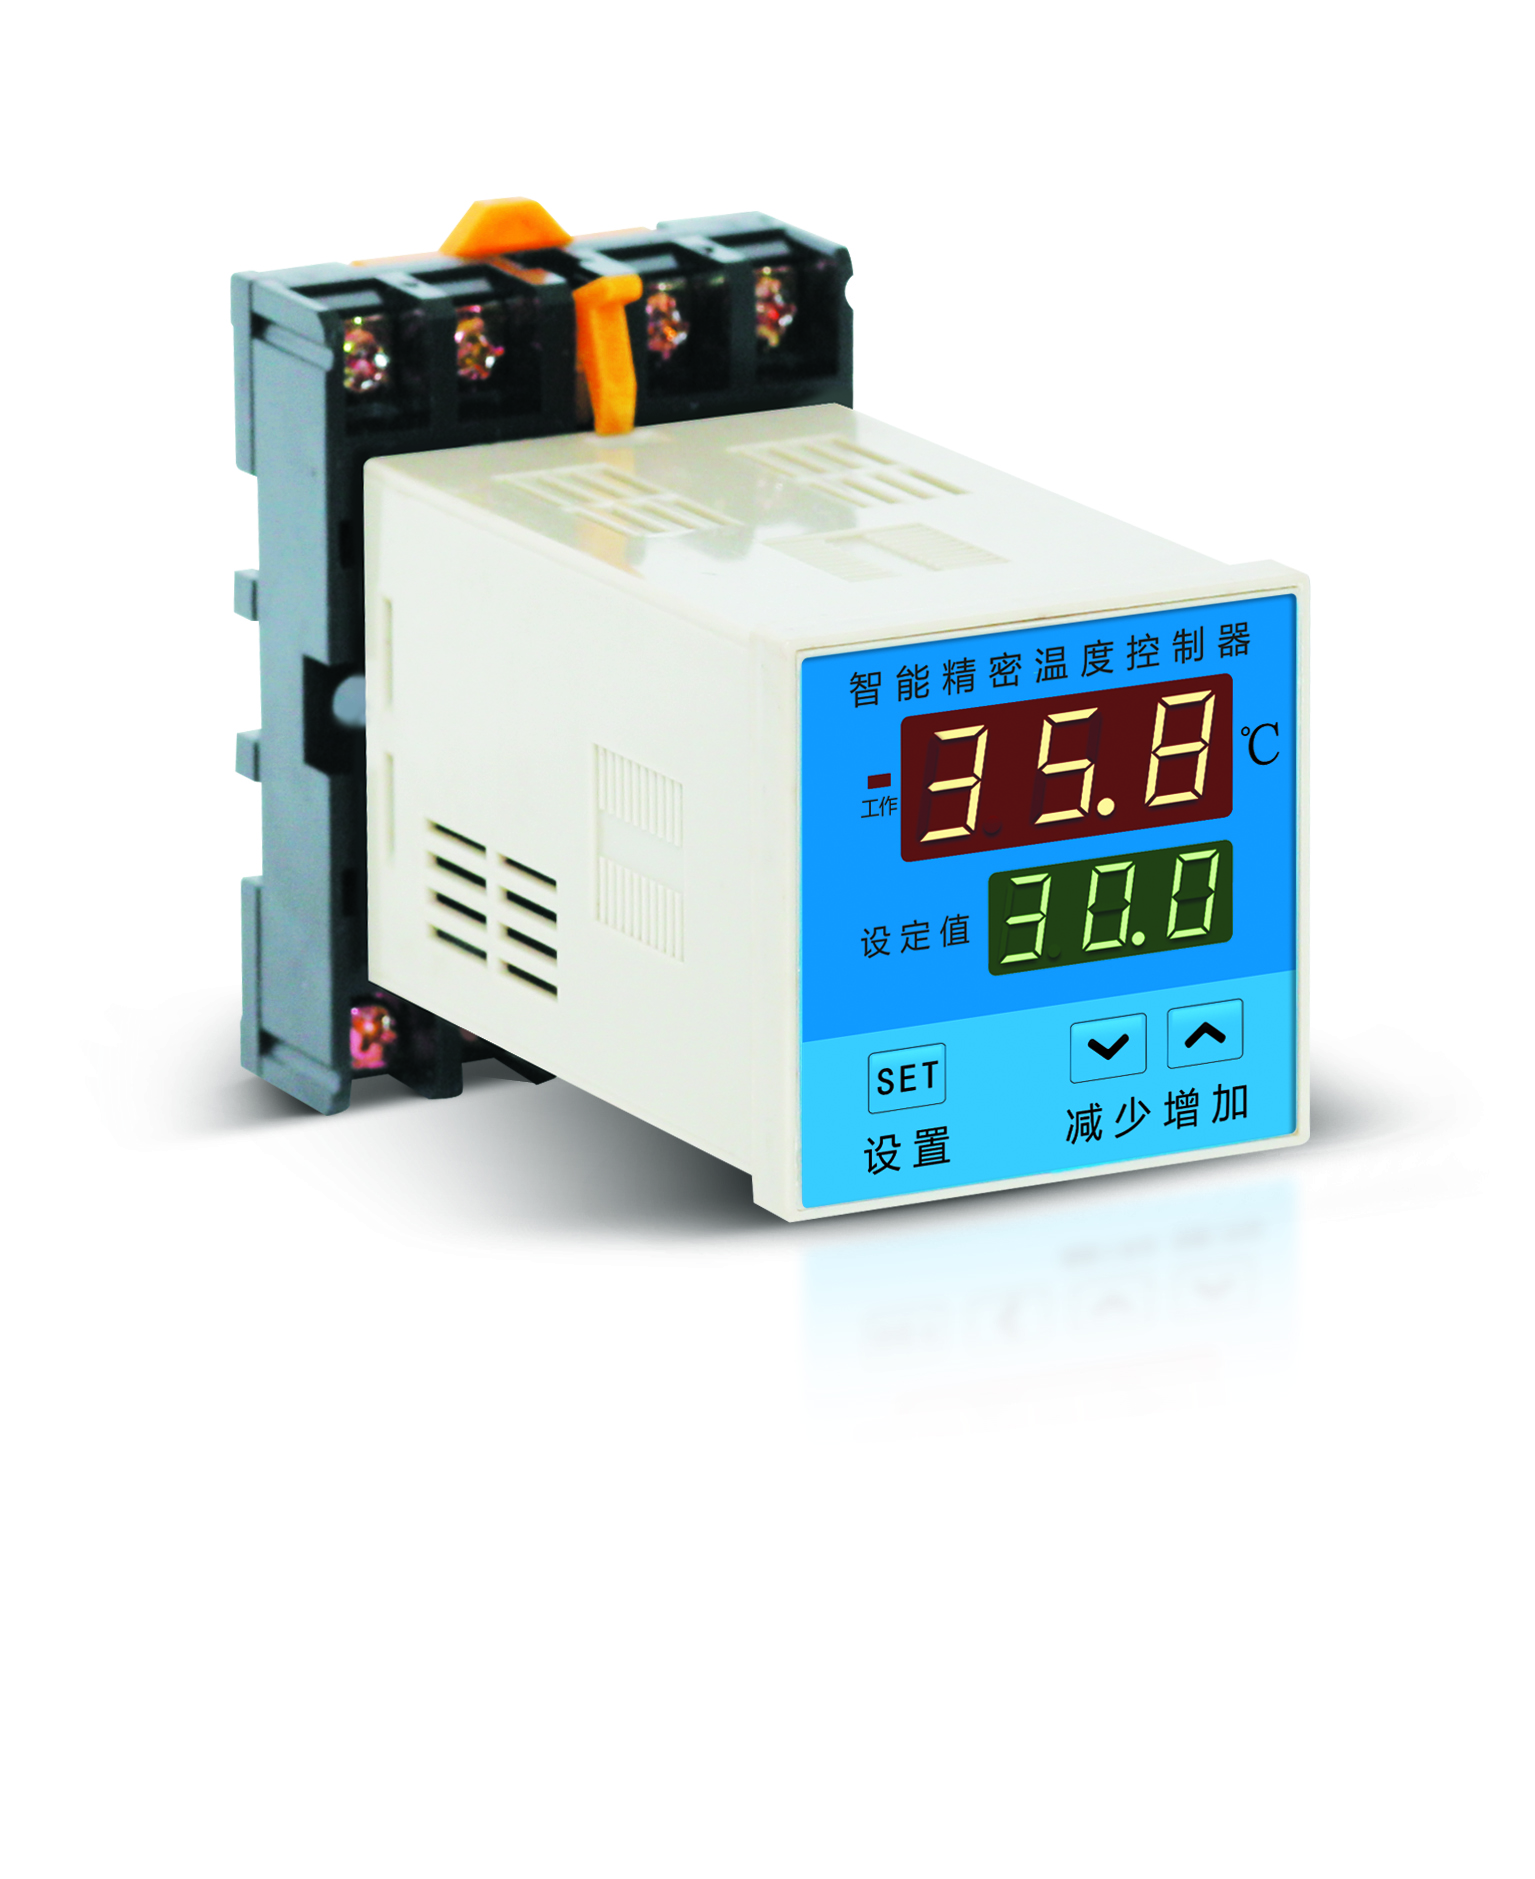 海口E5EC-PR2ADM-800数字温控器（简易型）加盟